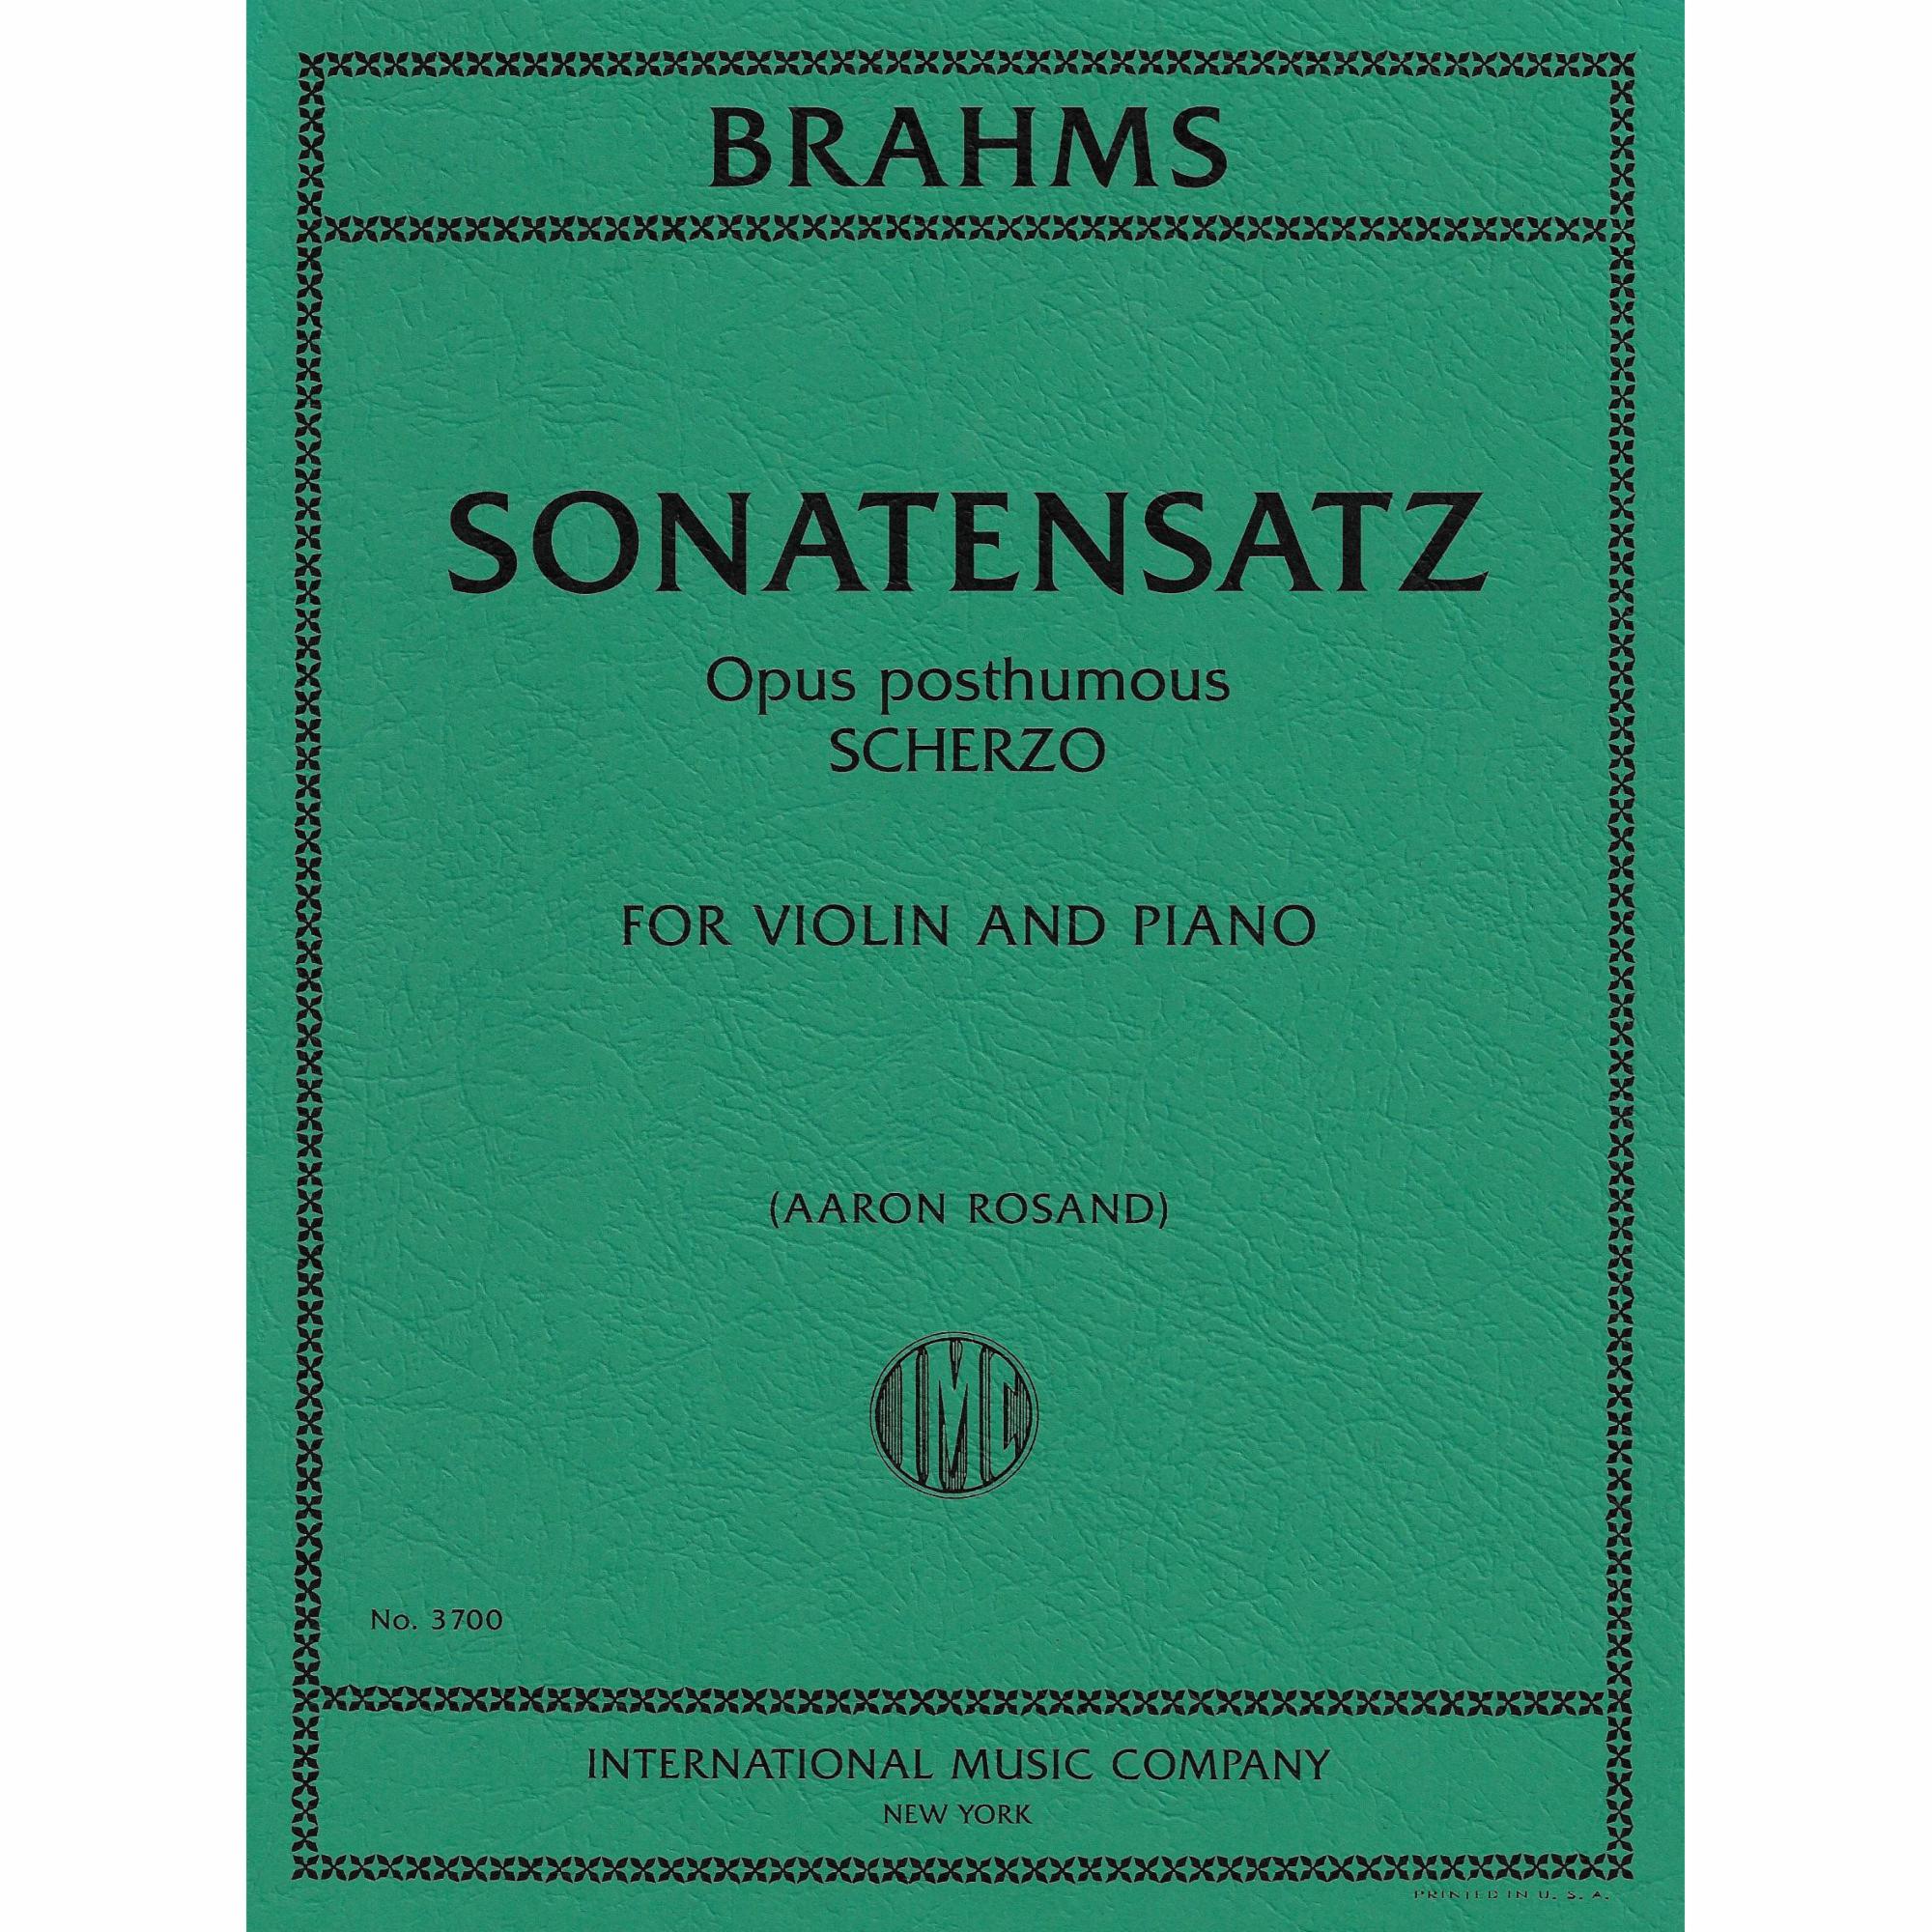 Brahms -- Sonatensatz (Scherzo), Op. post. for Violin and Piano